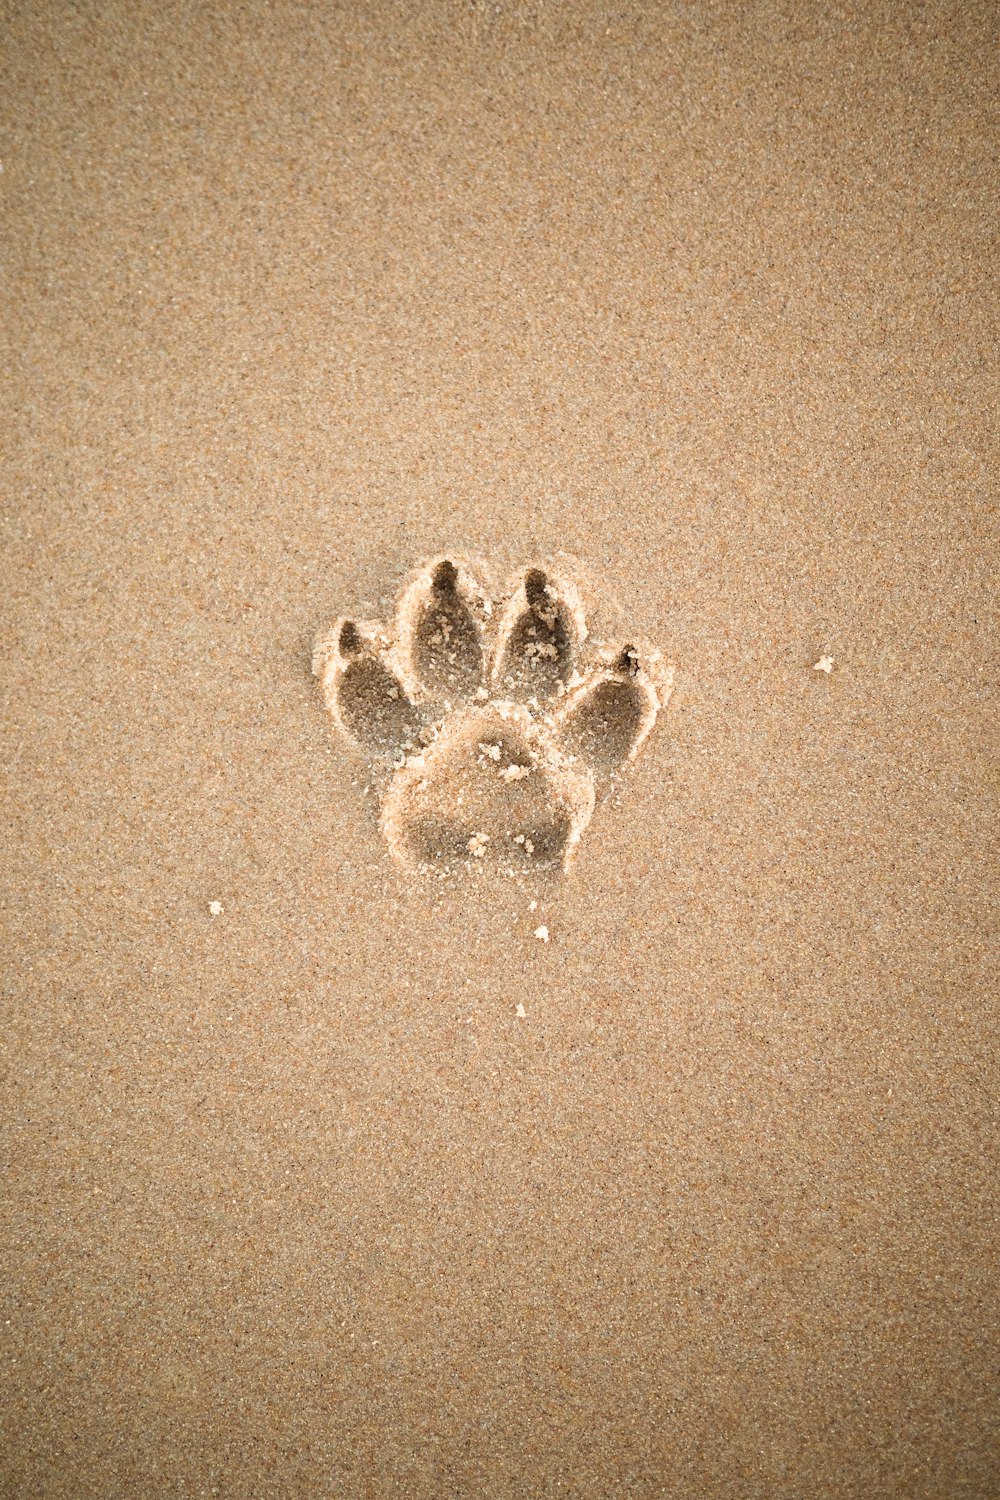 brauner Sand mit herzförmigem Sand